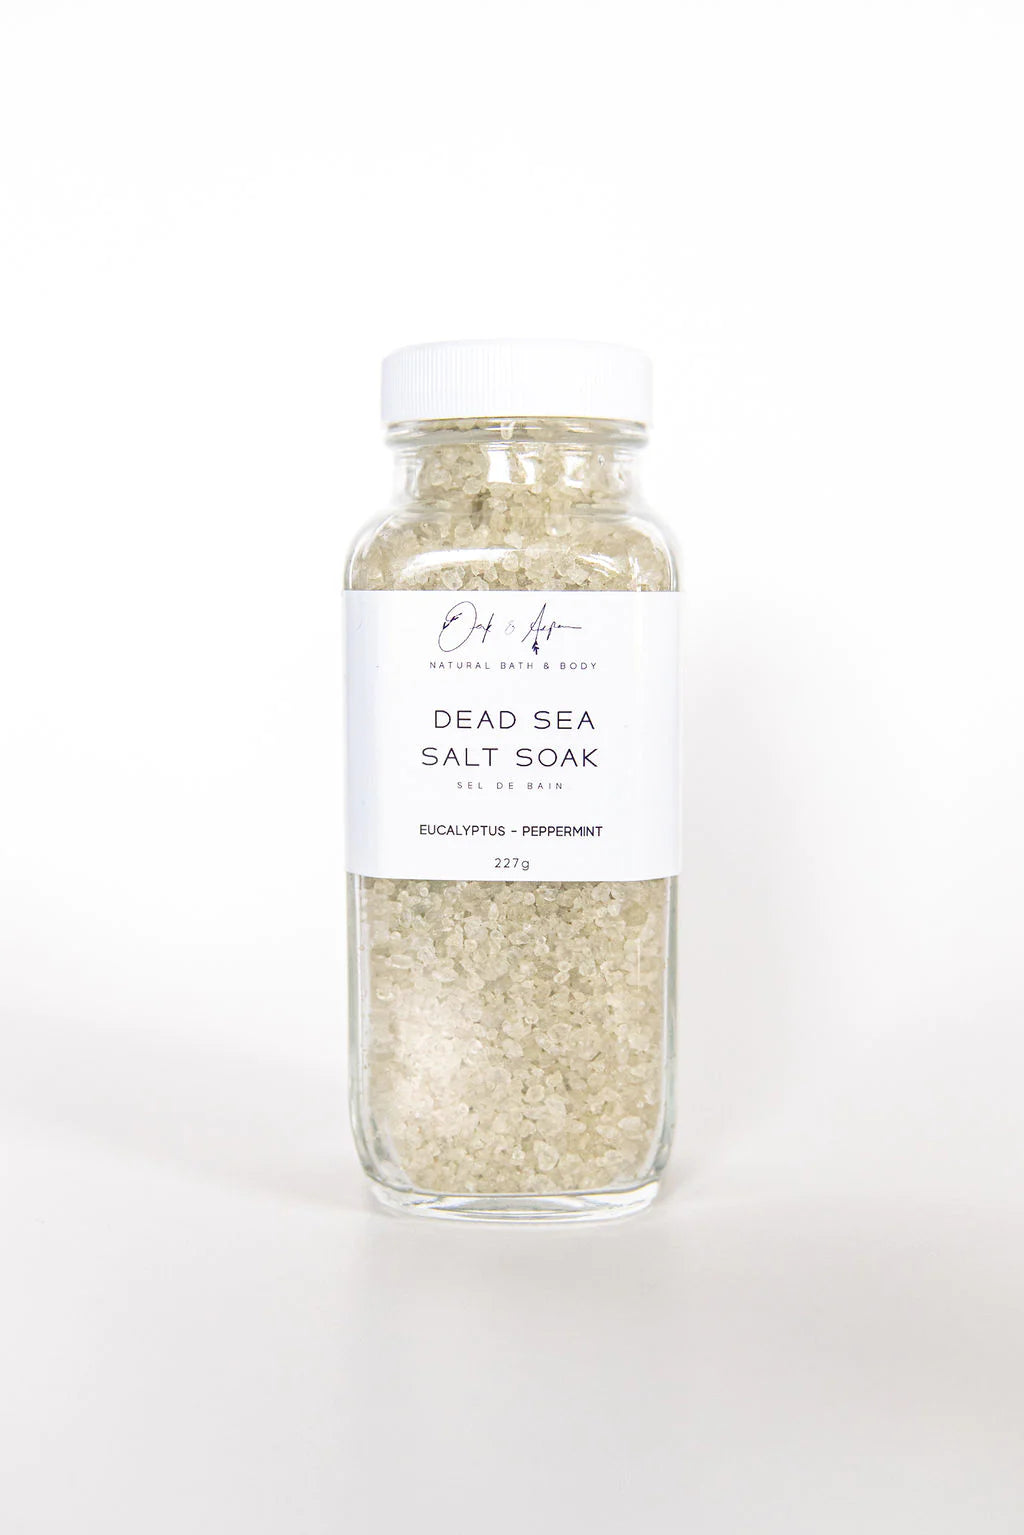 Oak & Aspen Salt Soak Dead Sea